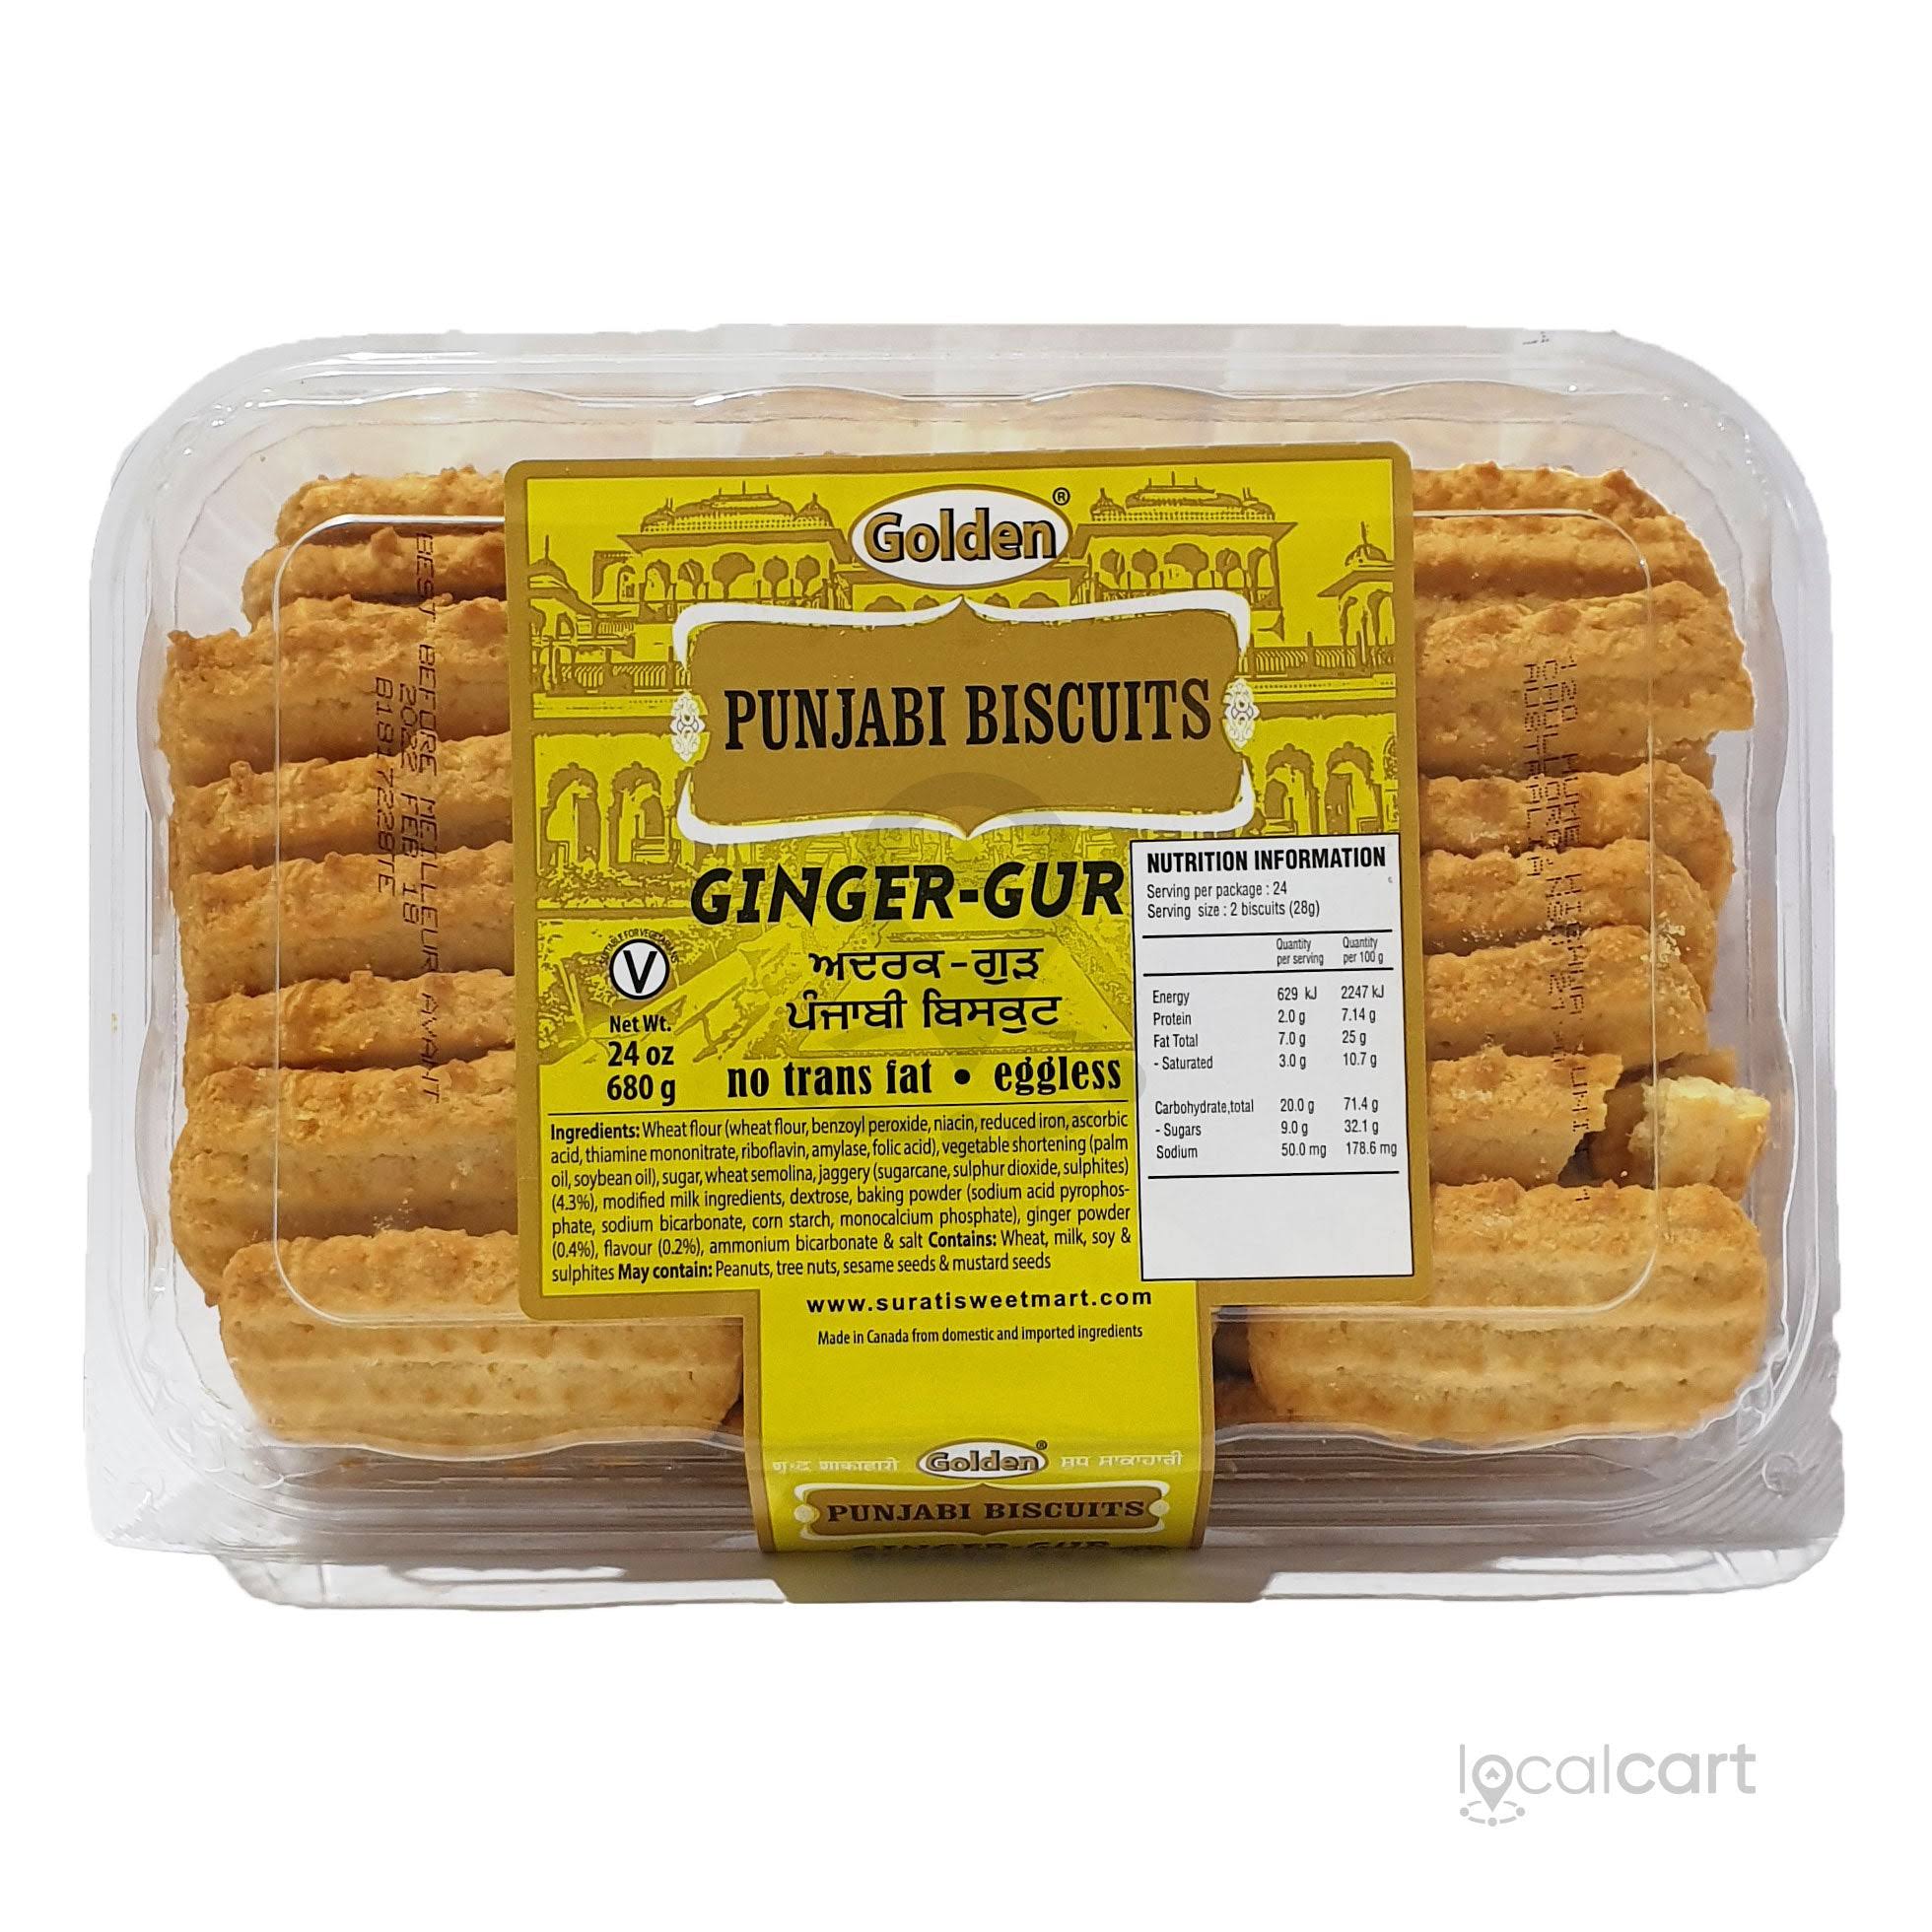 Golden Ginger Gur Punjabi Biscuits - 2.5 lb